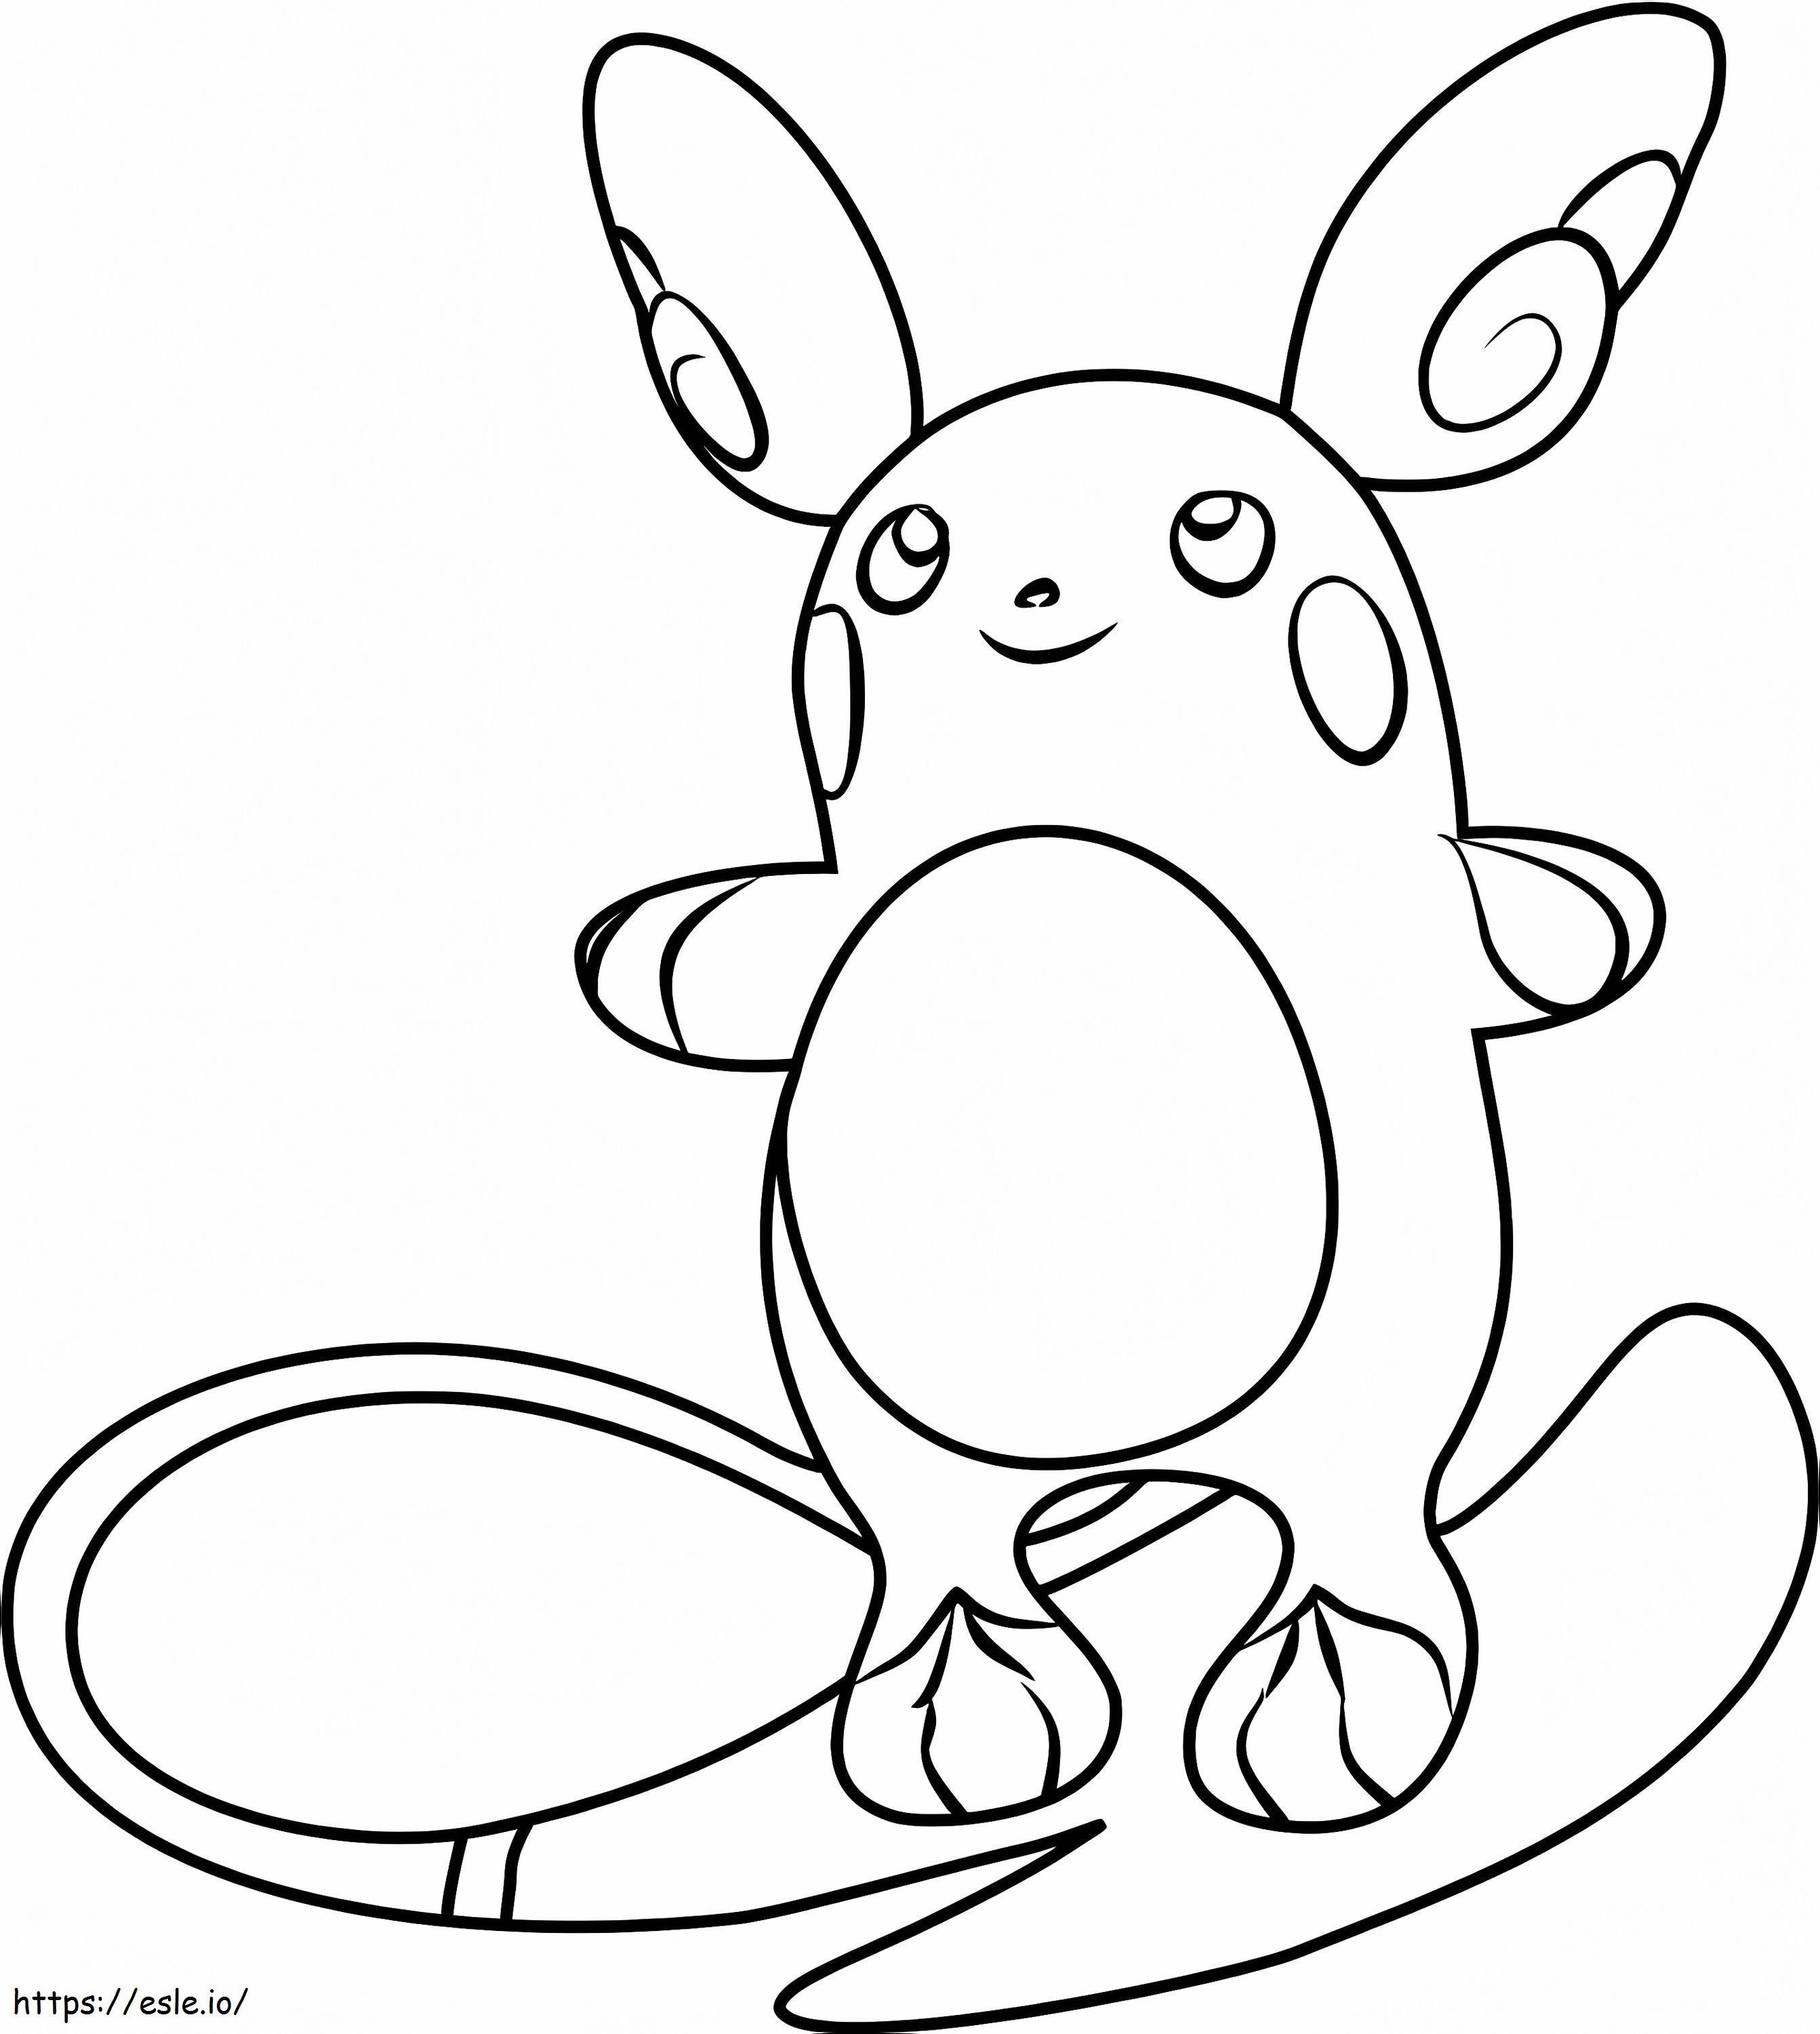 Pokémon Alolan Raichu coloring page